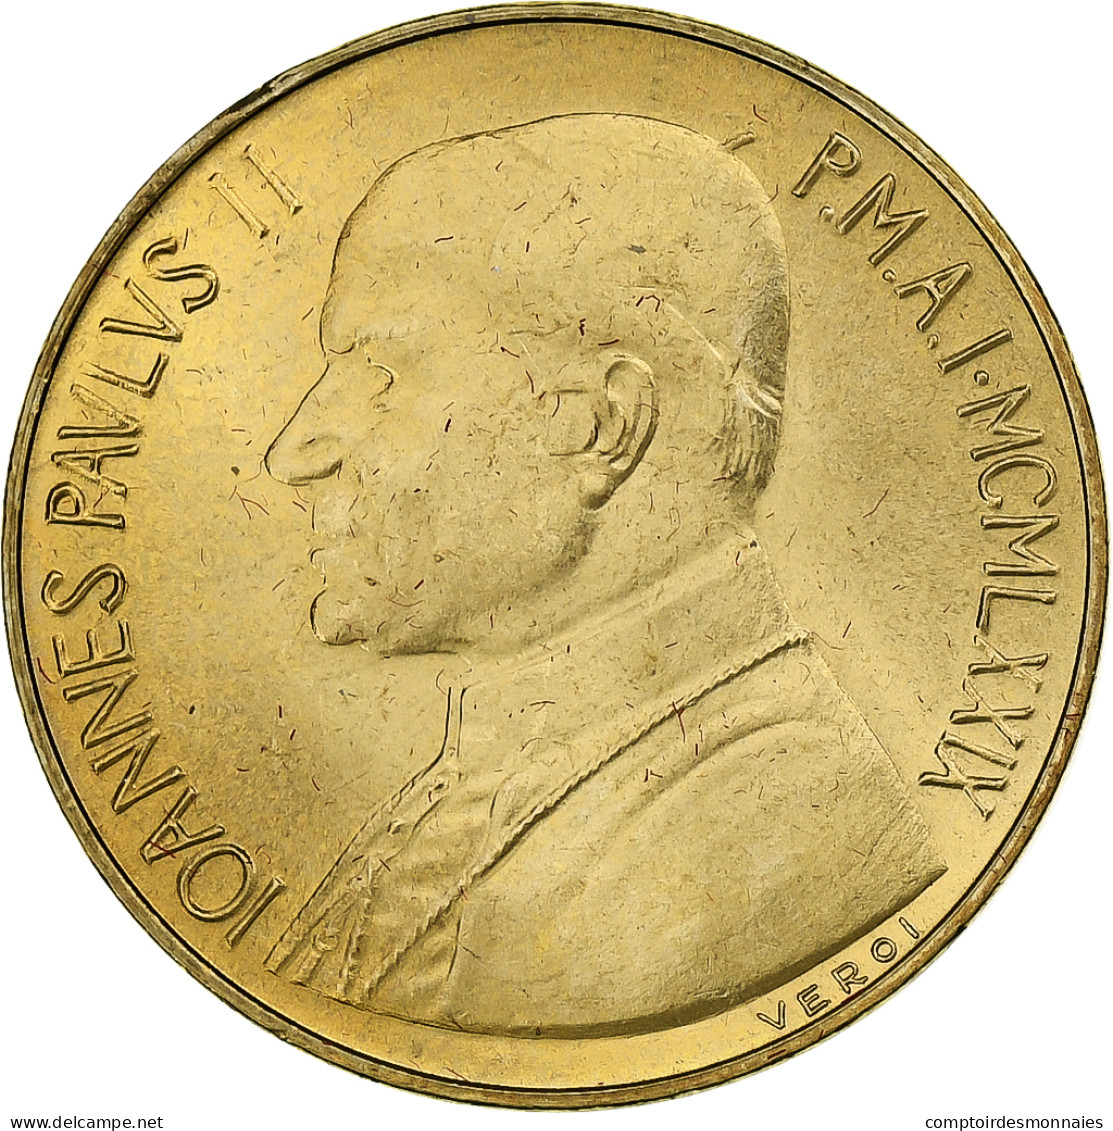 Vatican, John Paul II, 20 Lire, 1979 - Anno I, Rome, Bronze-Aluminium, SPL+ - Vaticaanstad